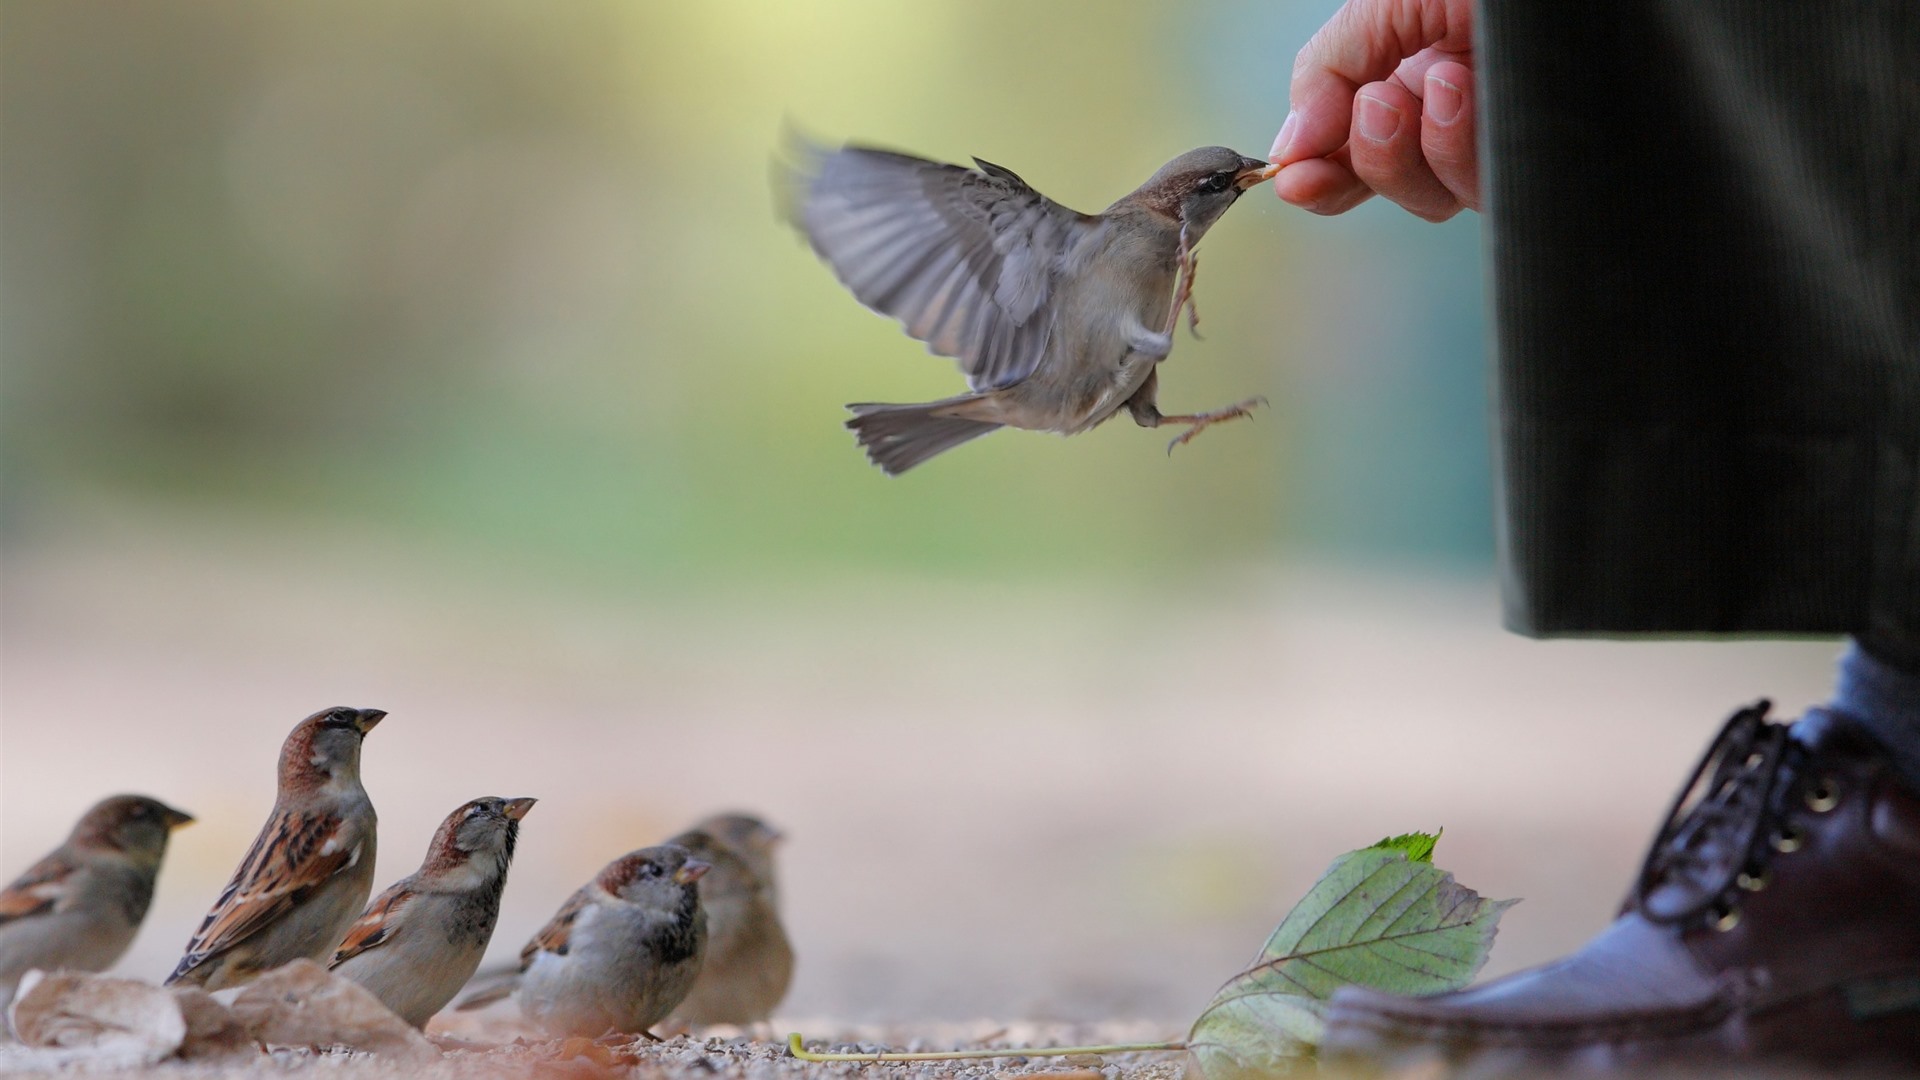 Sparrow-feeding_1920x1080.jpg